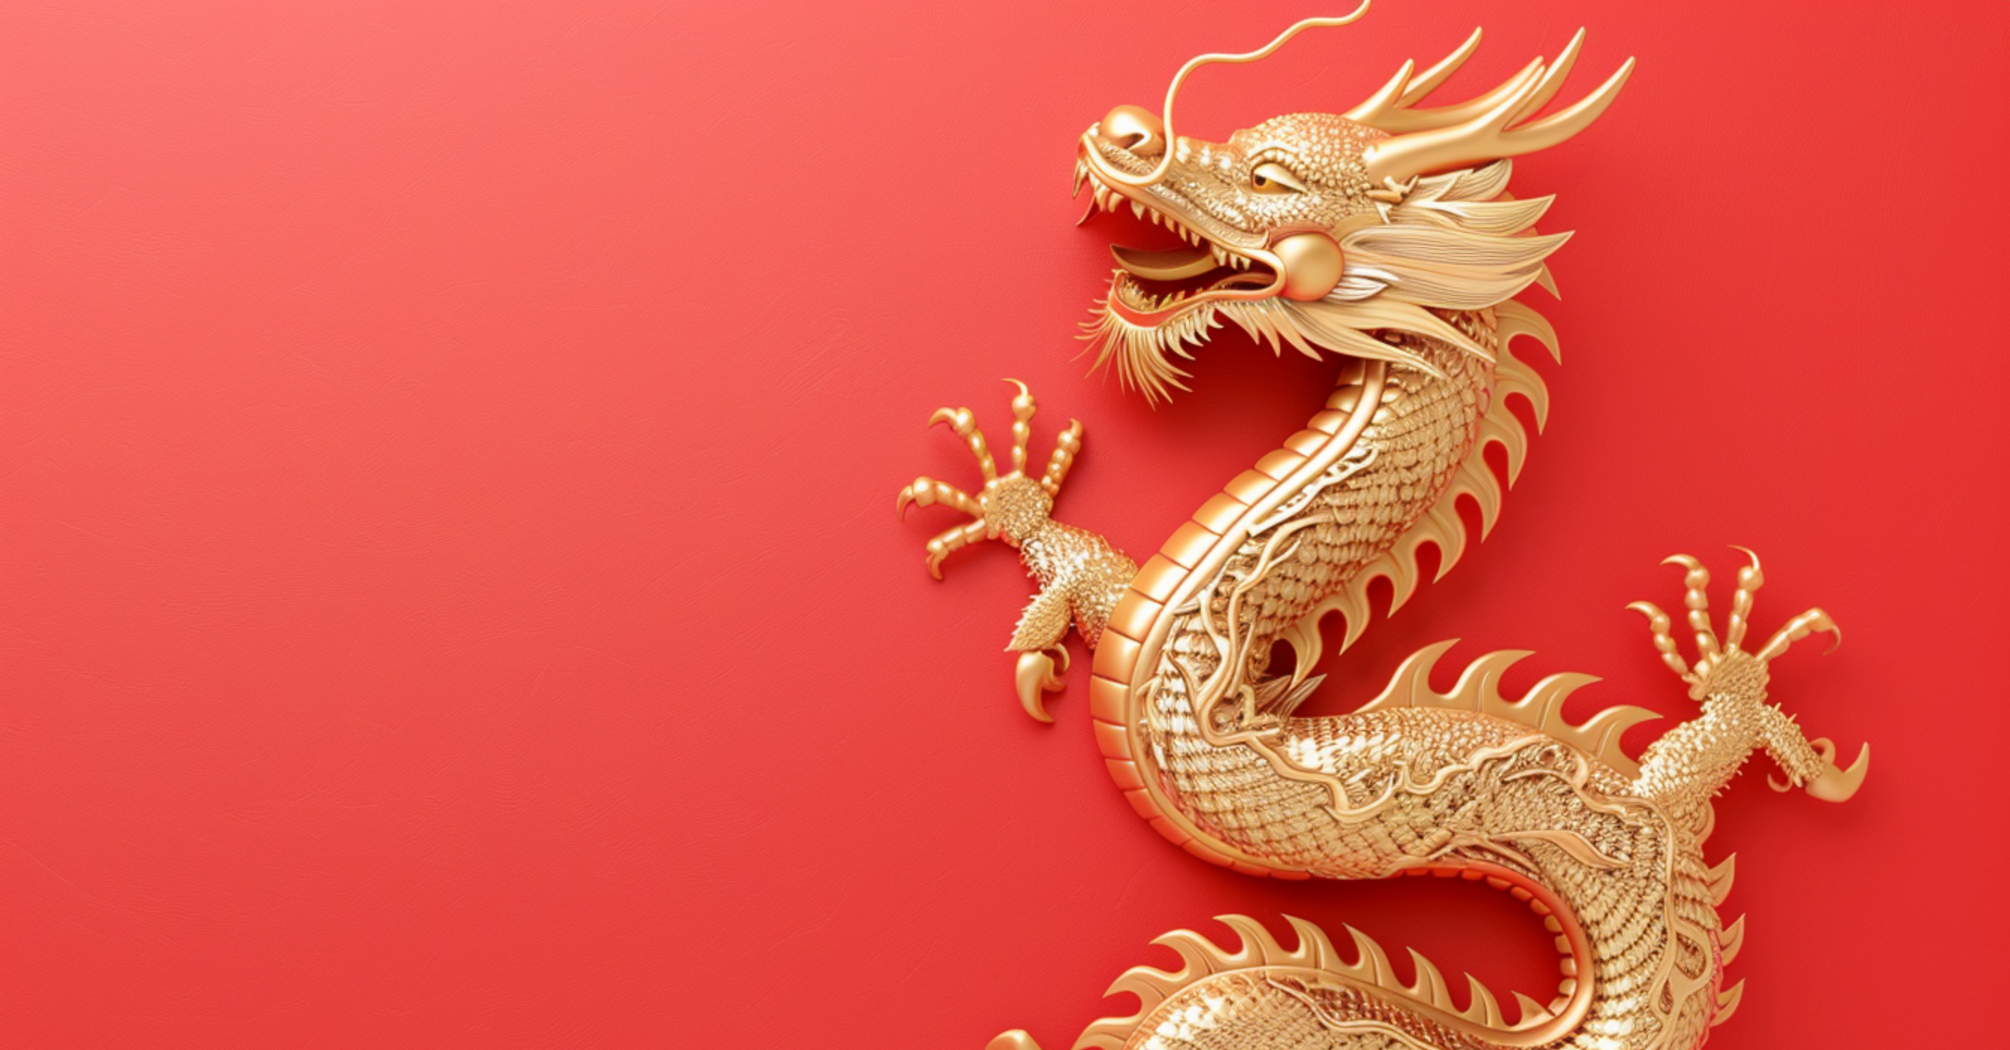 Будьте готові до удачі та успіхів у починаннях: китайський гороскоп на 23 березня